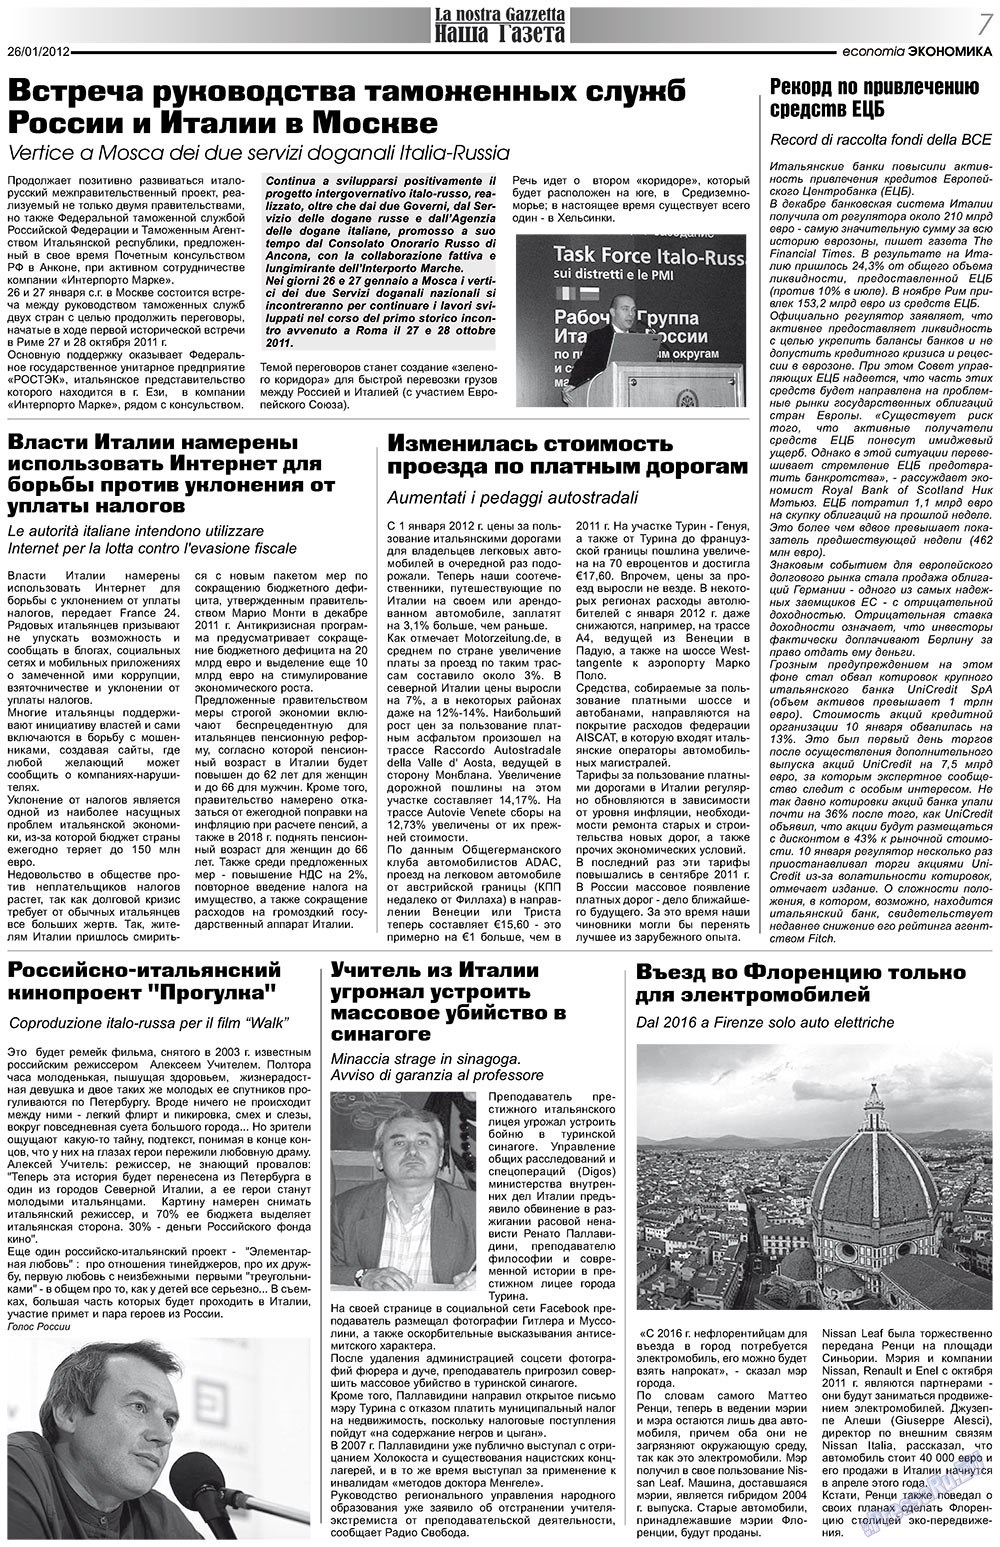 Наша Газета Италия, газета. 2012 №149 стр.7